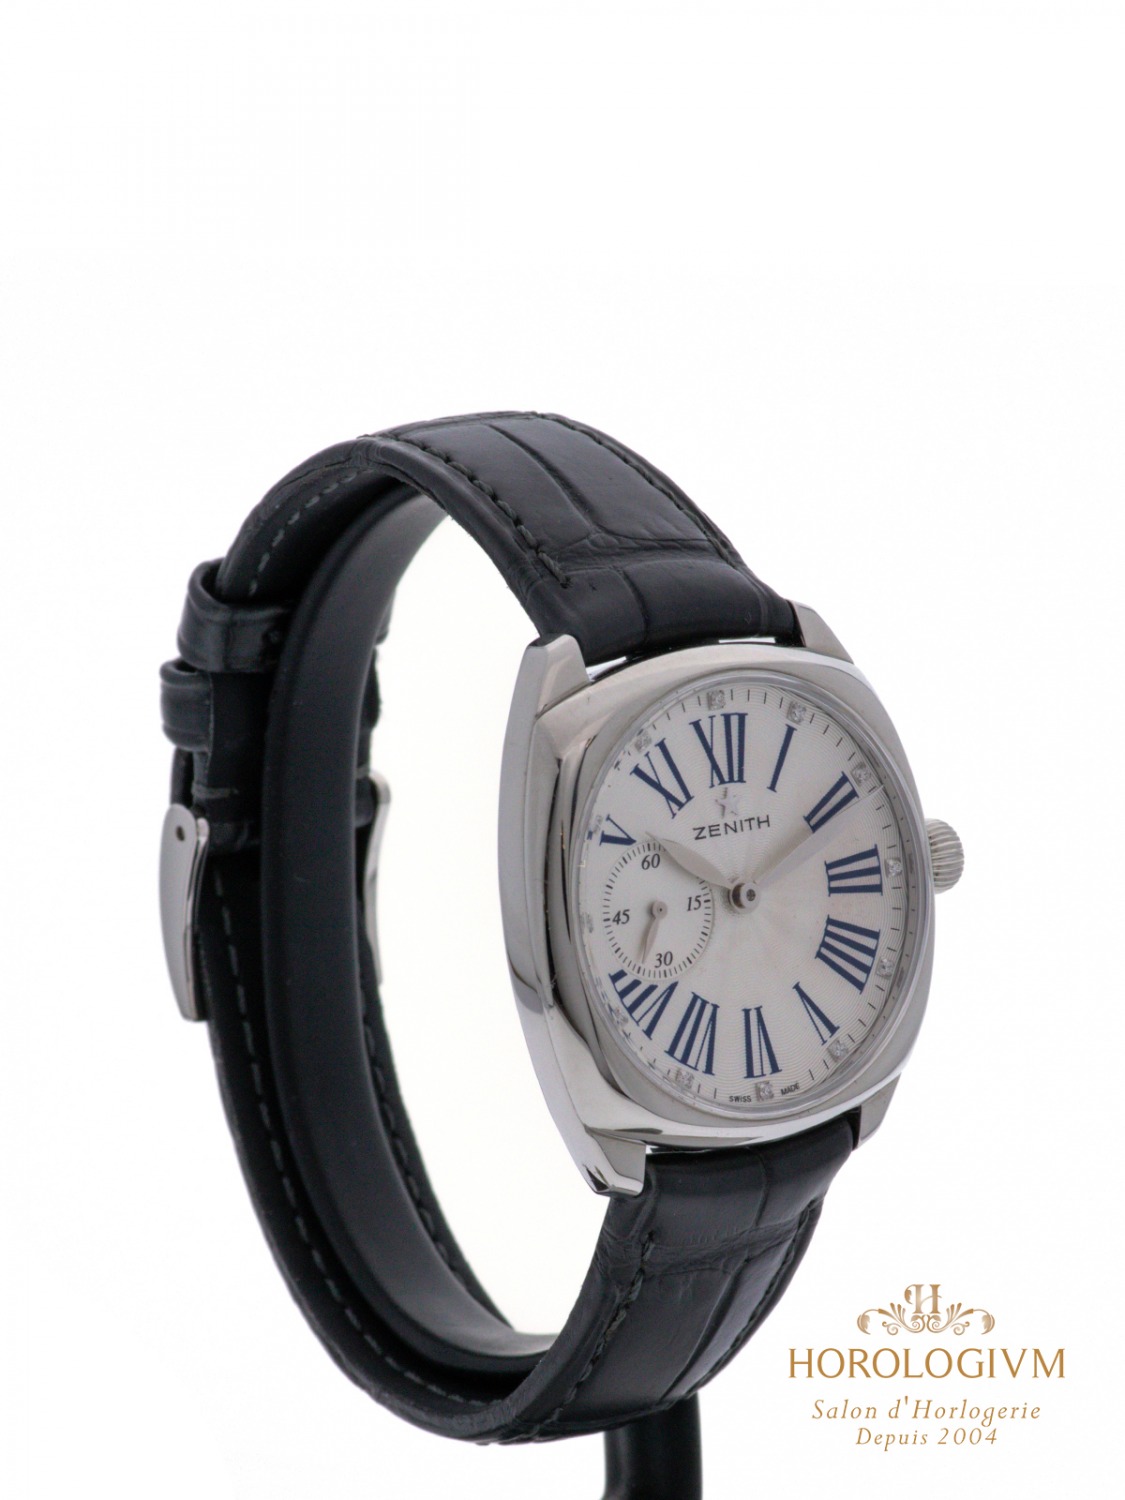 Zenith Star Elite Ref. 03.1970.681 watch, silver